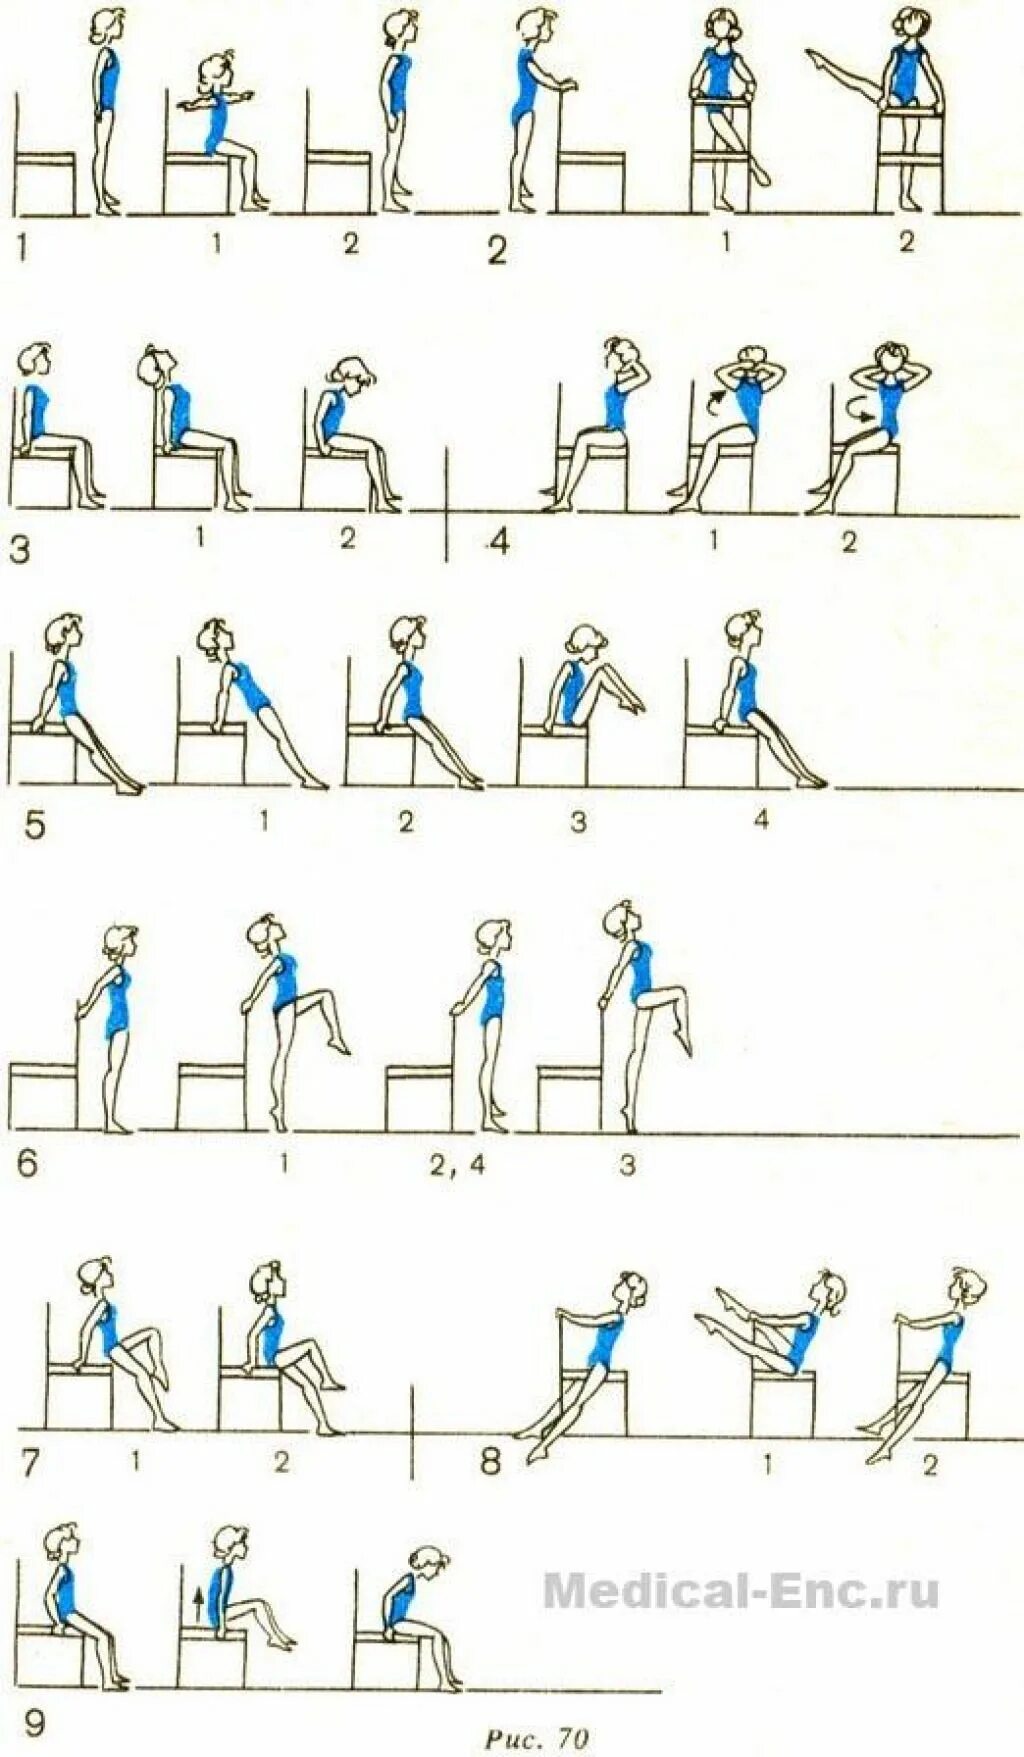 Упражнения на пресс сидя. Упражнения на стуле для похудения живота и боков. Комплекс упражнений со стулом. Комплекс упражнений сидя. Упражнения для пресса на стуле.